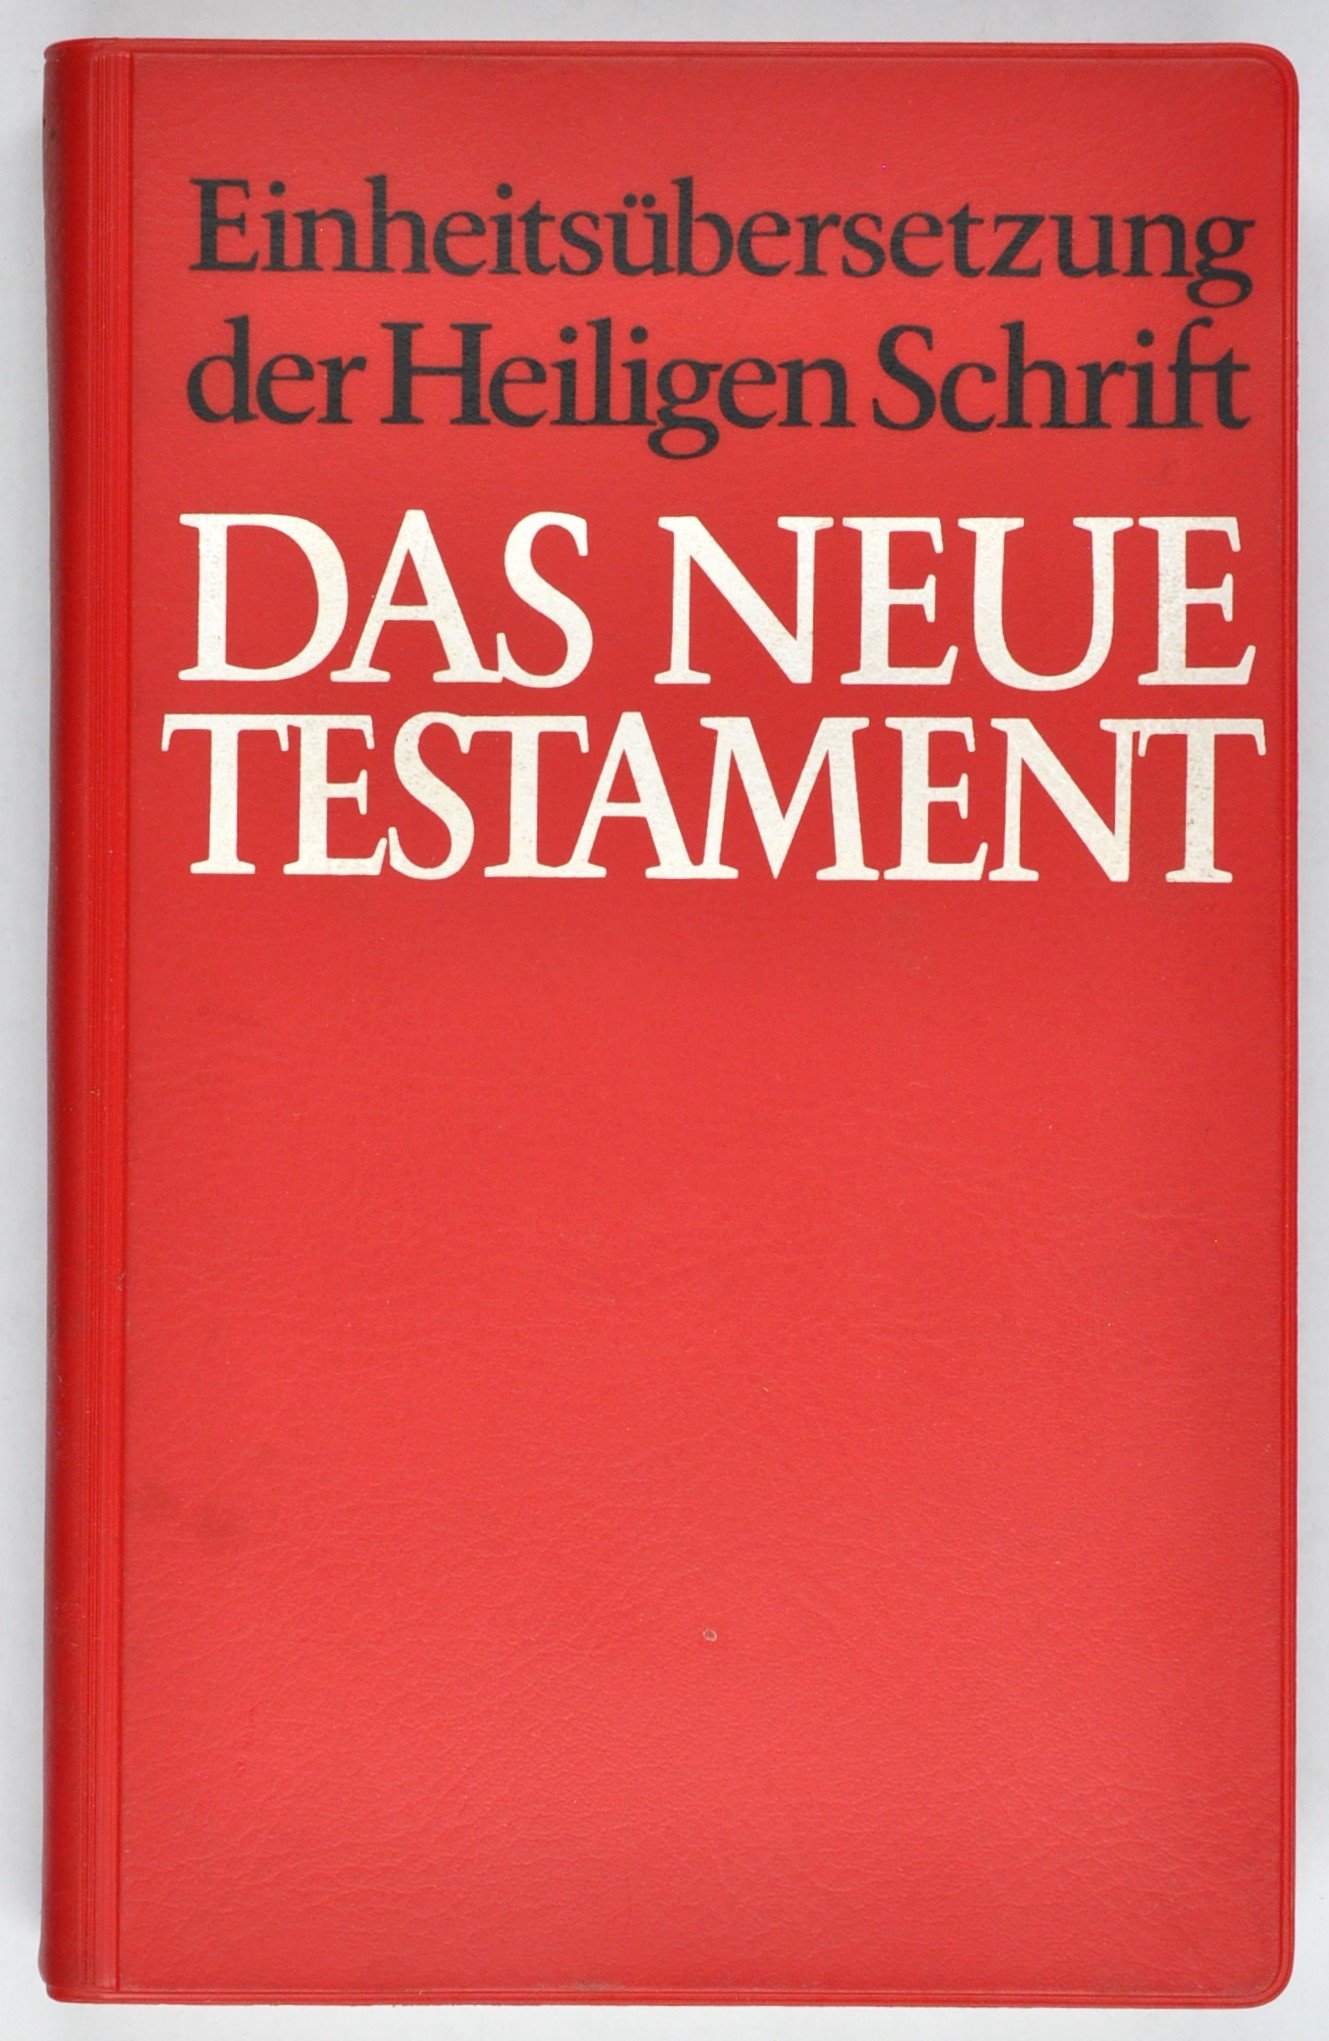 Buch: Einheitsübersetzung der Heiligen Schrift: Das Neue Testament, Stuttgart 1979 (DDR Geschichtsmuseum im Dokumentationszentrum Perleberg CC BY-SA)